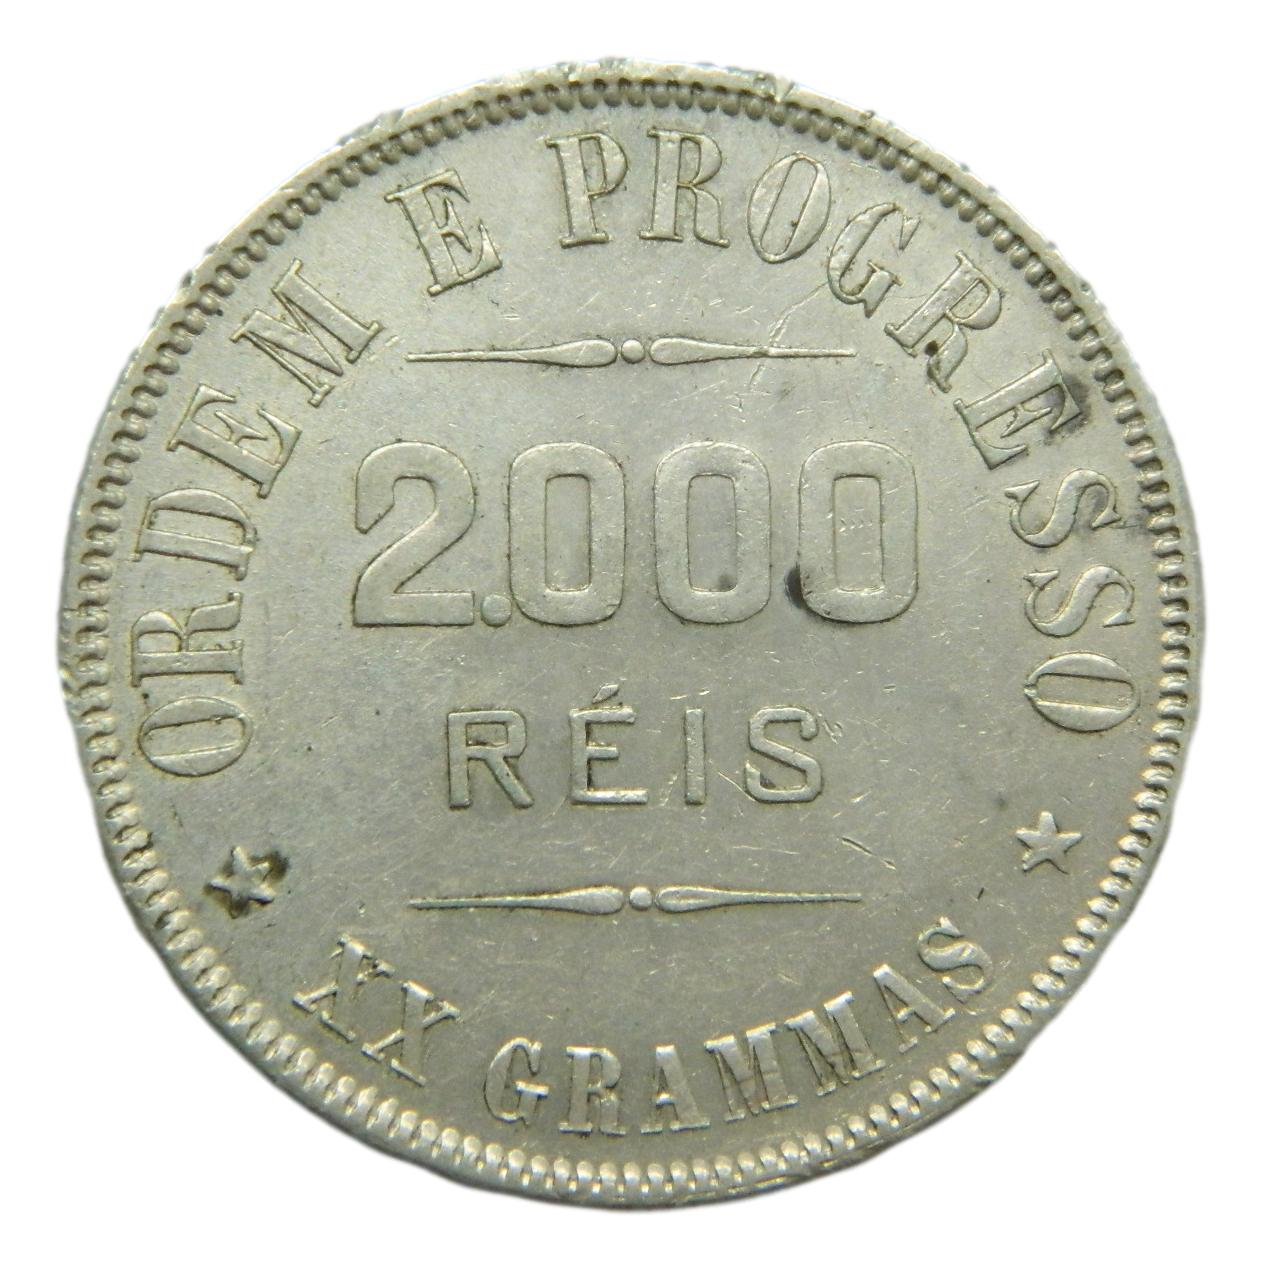 1910 - BRASIL - 2000 REIS - PLATA 